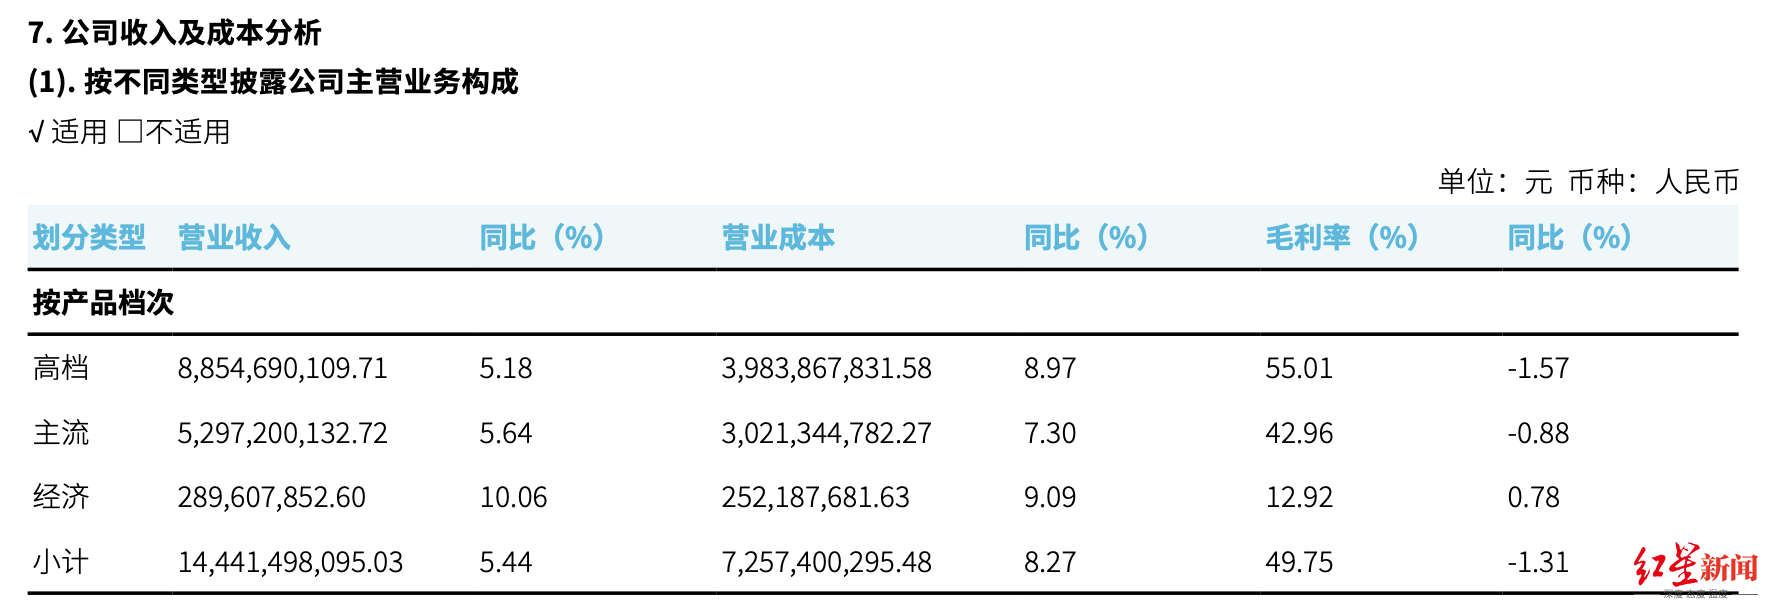 重庆啤酒高端化战略一年后 4元以下产品营收增幅最大 高档产品增幅最差